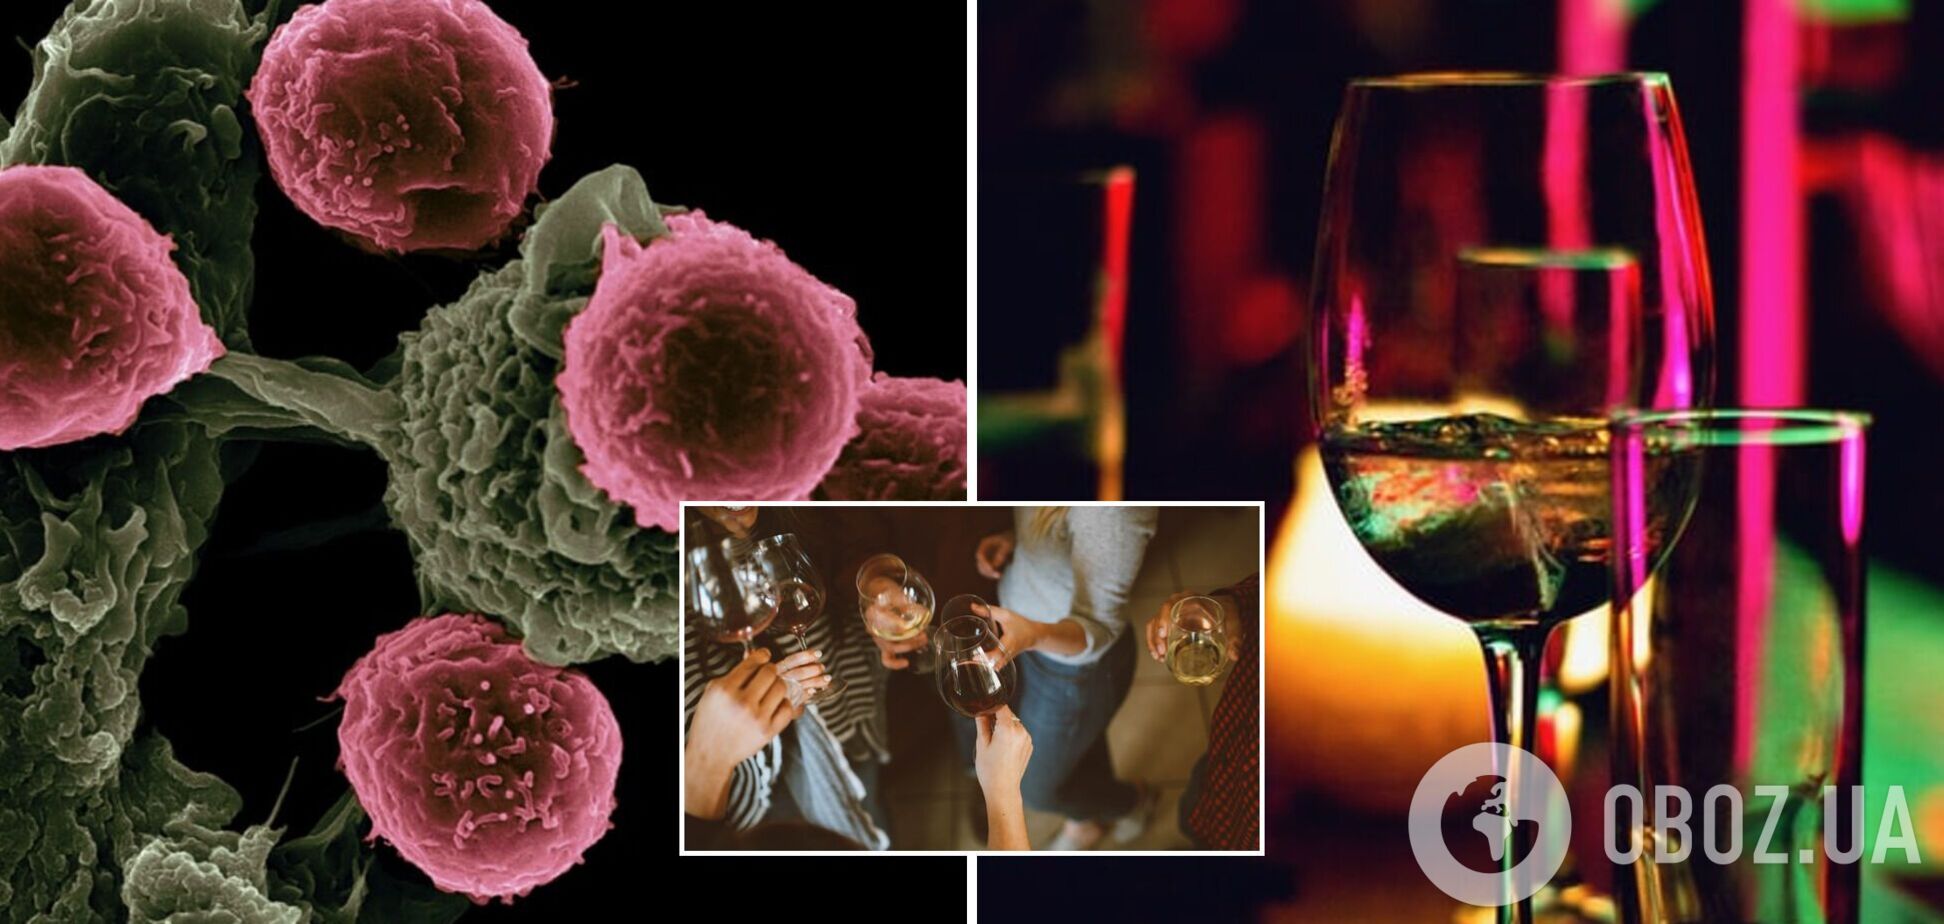 Вживання алкоголю може підвищити ризик розвитку раку: результати дослідження